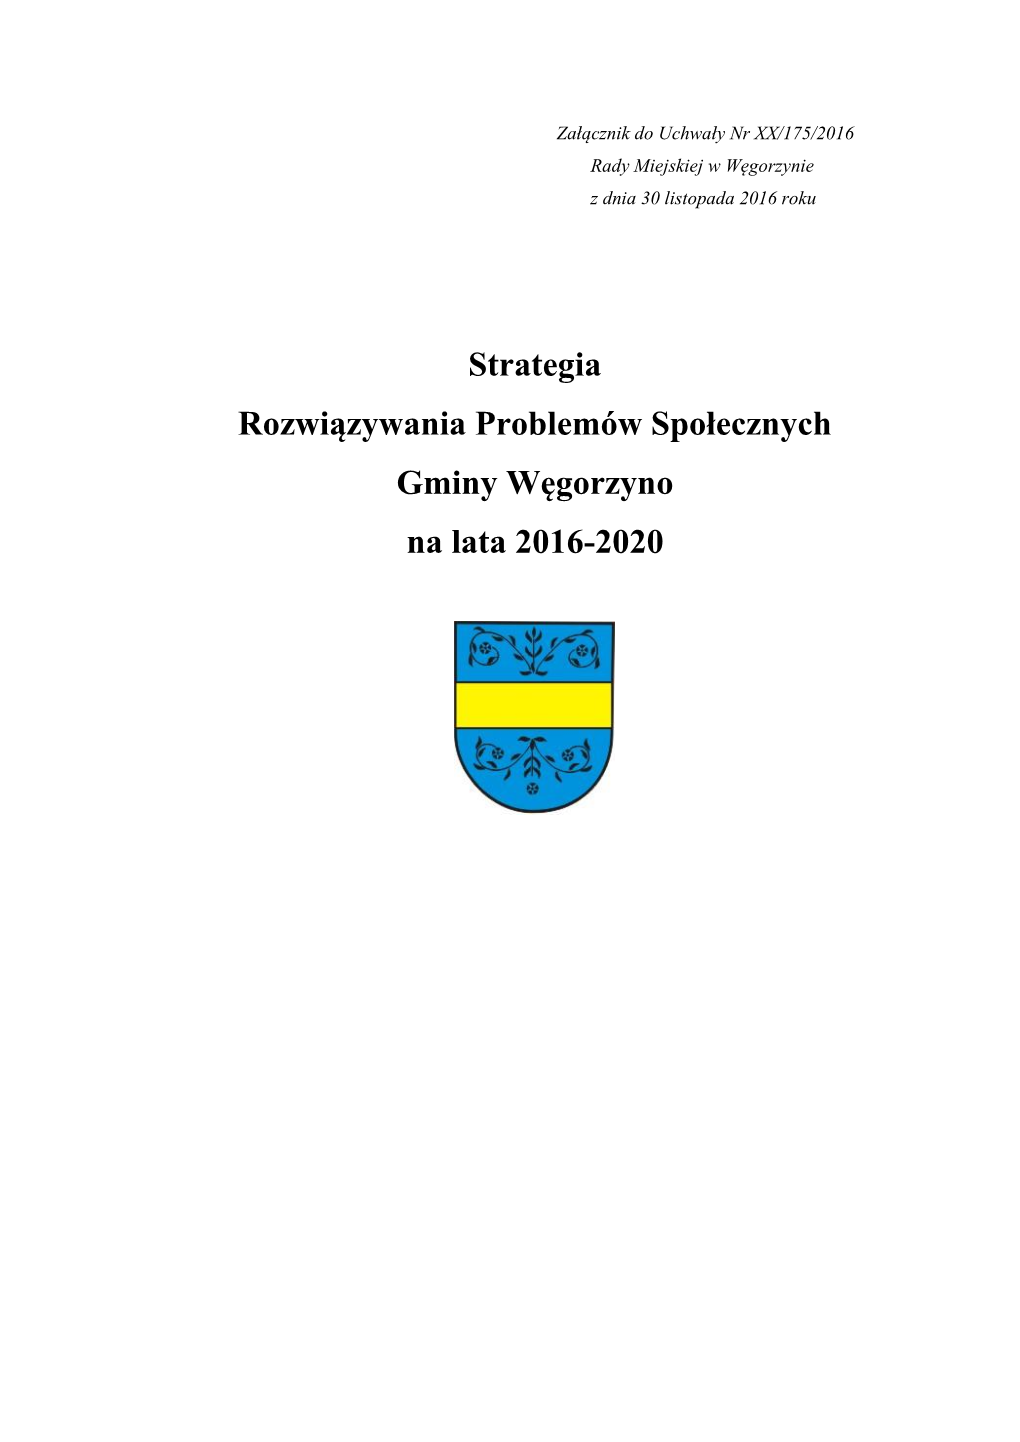 Strategia Rozwiązywania Problemów Społecznych Gminy Węgorzyno Na Lata 2016-2020